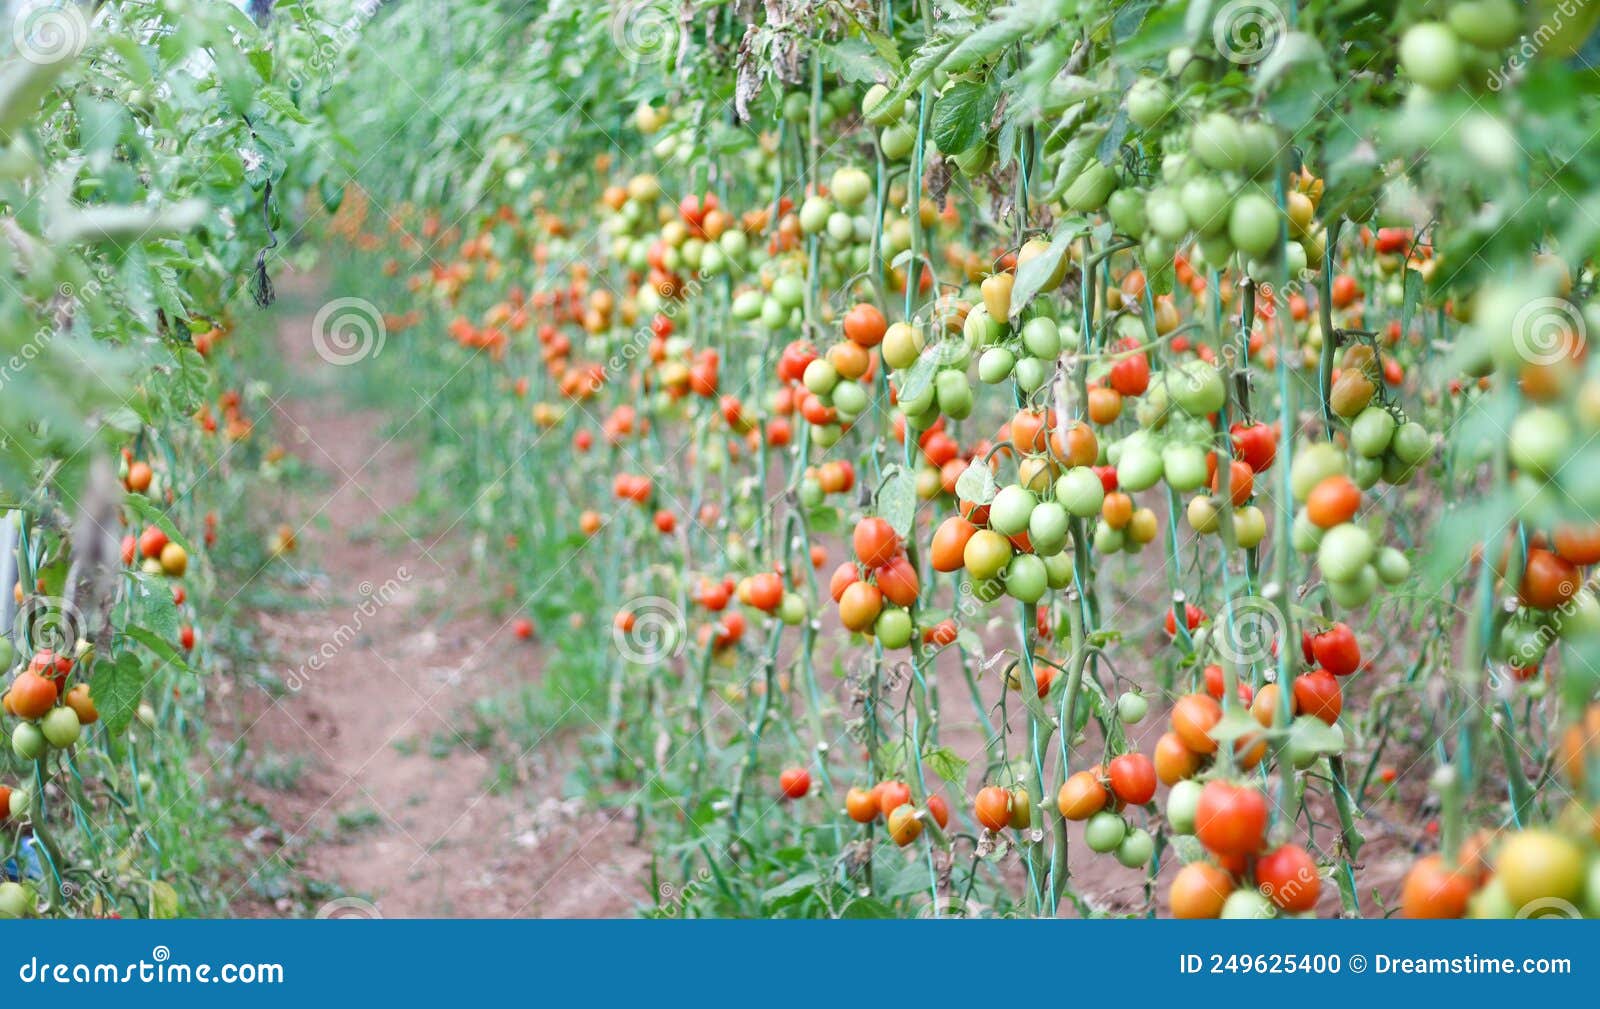 【价格行情】解密2015番茄价格一落千丈的主要原因 - 中国蔬菜 - 新农资360网|土壤改良|果树种植|蔬菜种植|种植示范田|品牌展播|农资微专栏